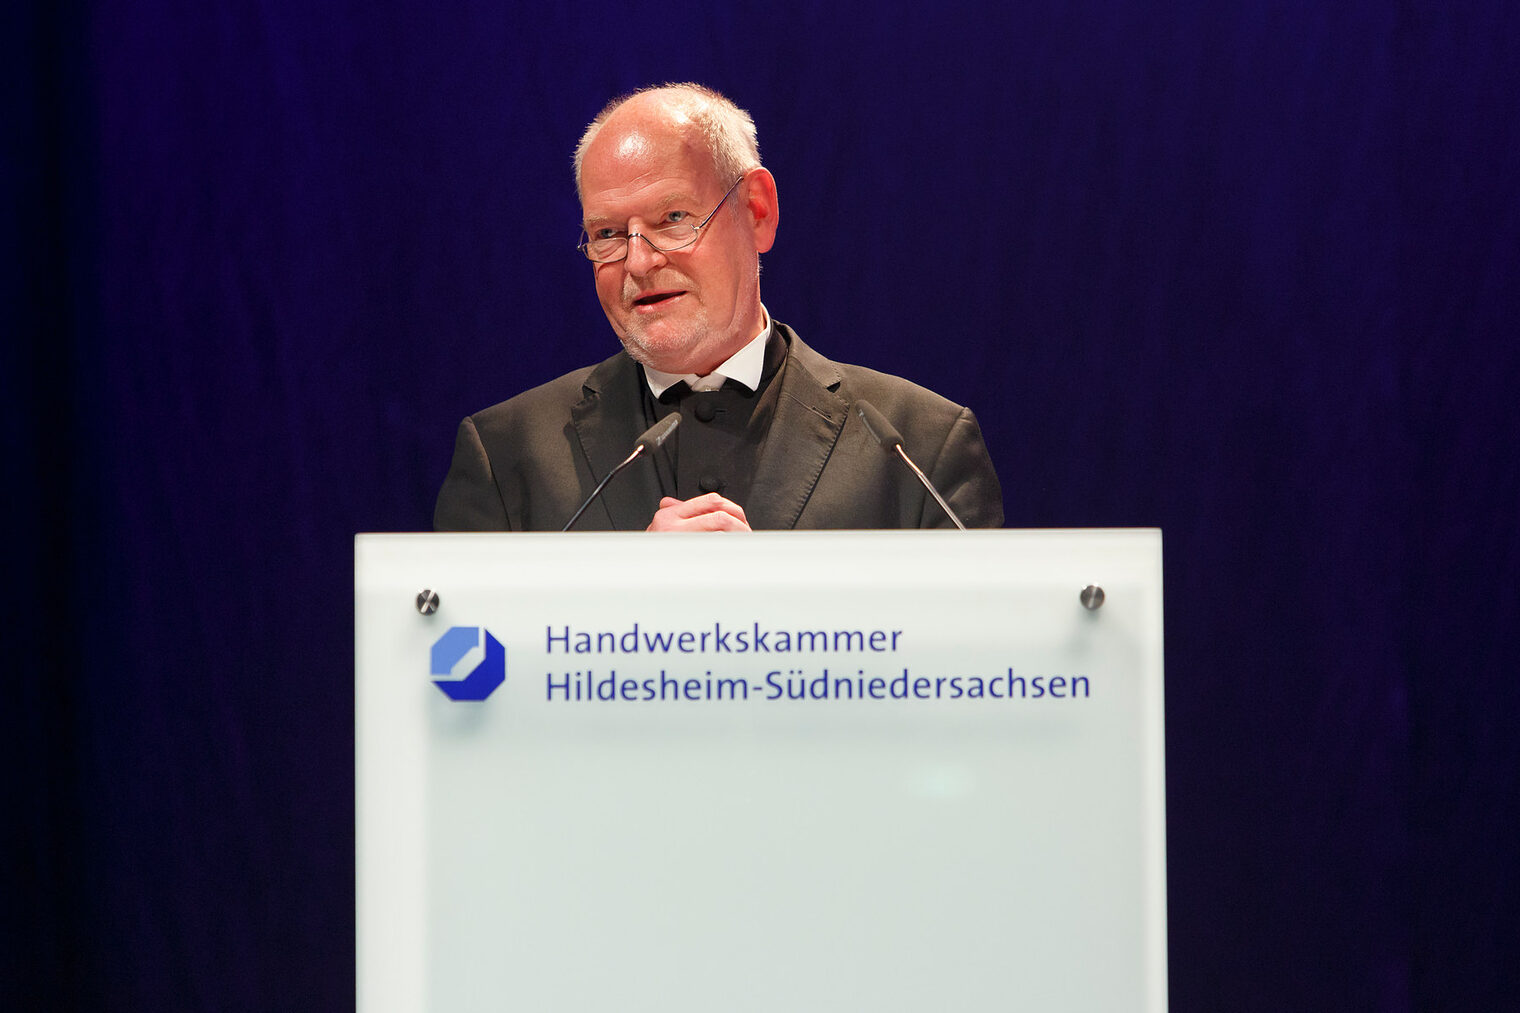 Meisterfeier 2017 der Handwerkskammer Hildesheim-Südniedersachsen am 21.10.2017 © Torsten Volkmer 2017, volkmr fotografie, www.volkmer.tv, 0173-9950919.